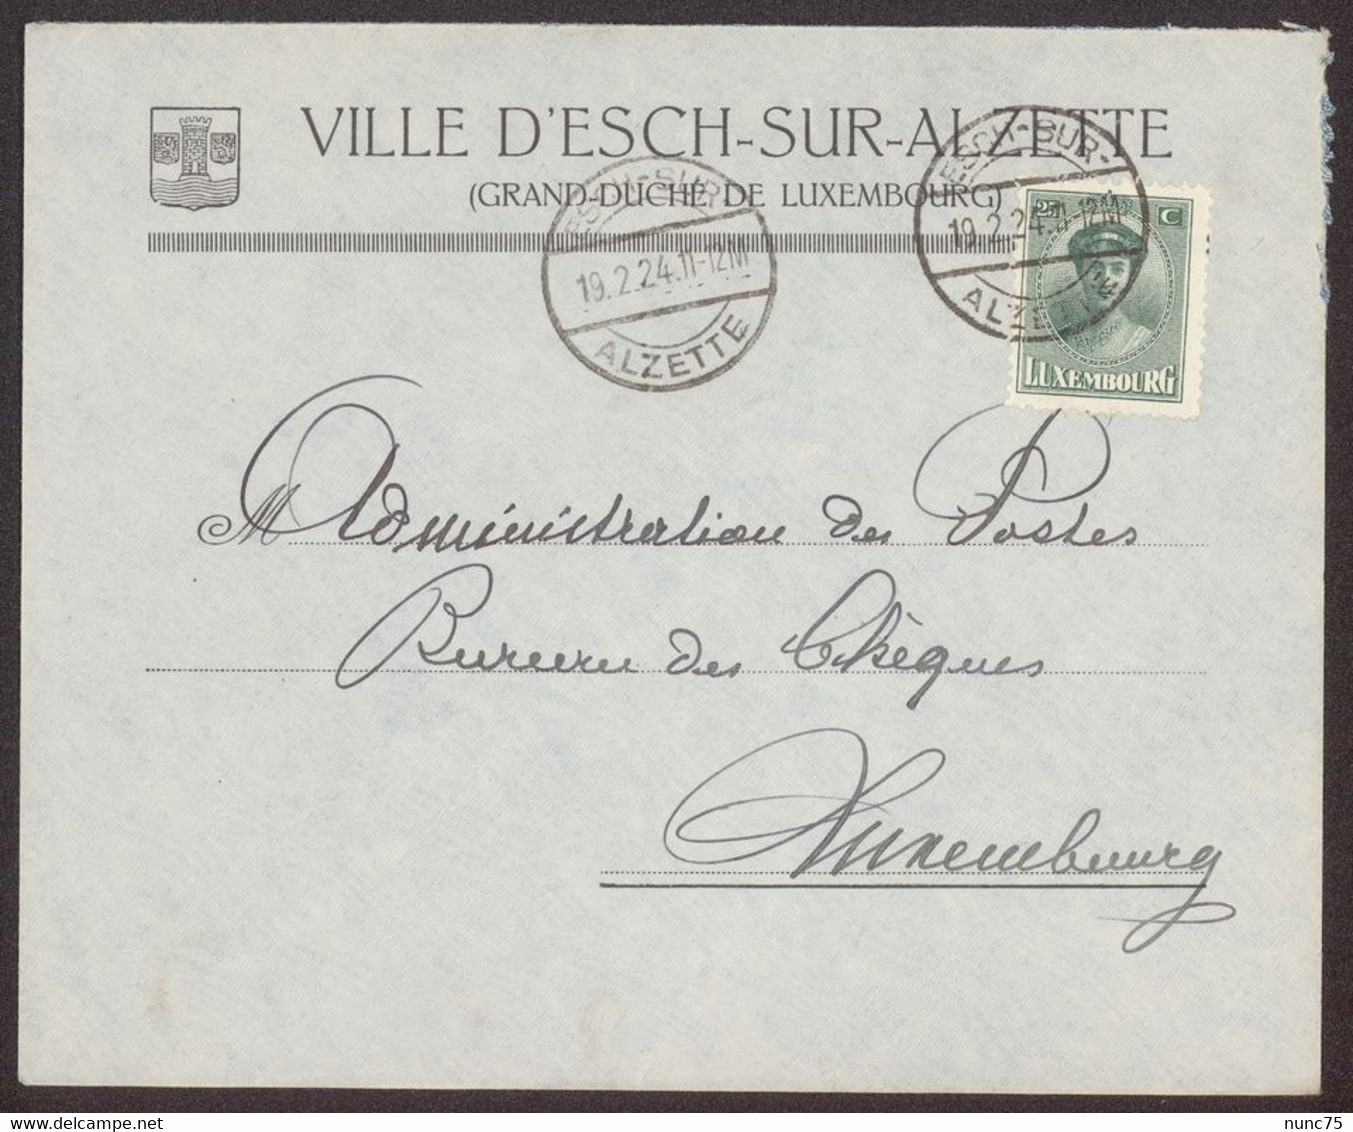 Facture / Enveloppe Ancienne ESCH SUR ALZETTE Luxembourg  VILLE D'ESCH  1924 - Luxembourg